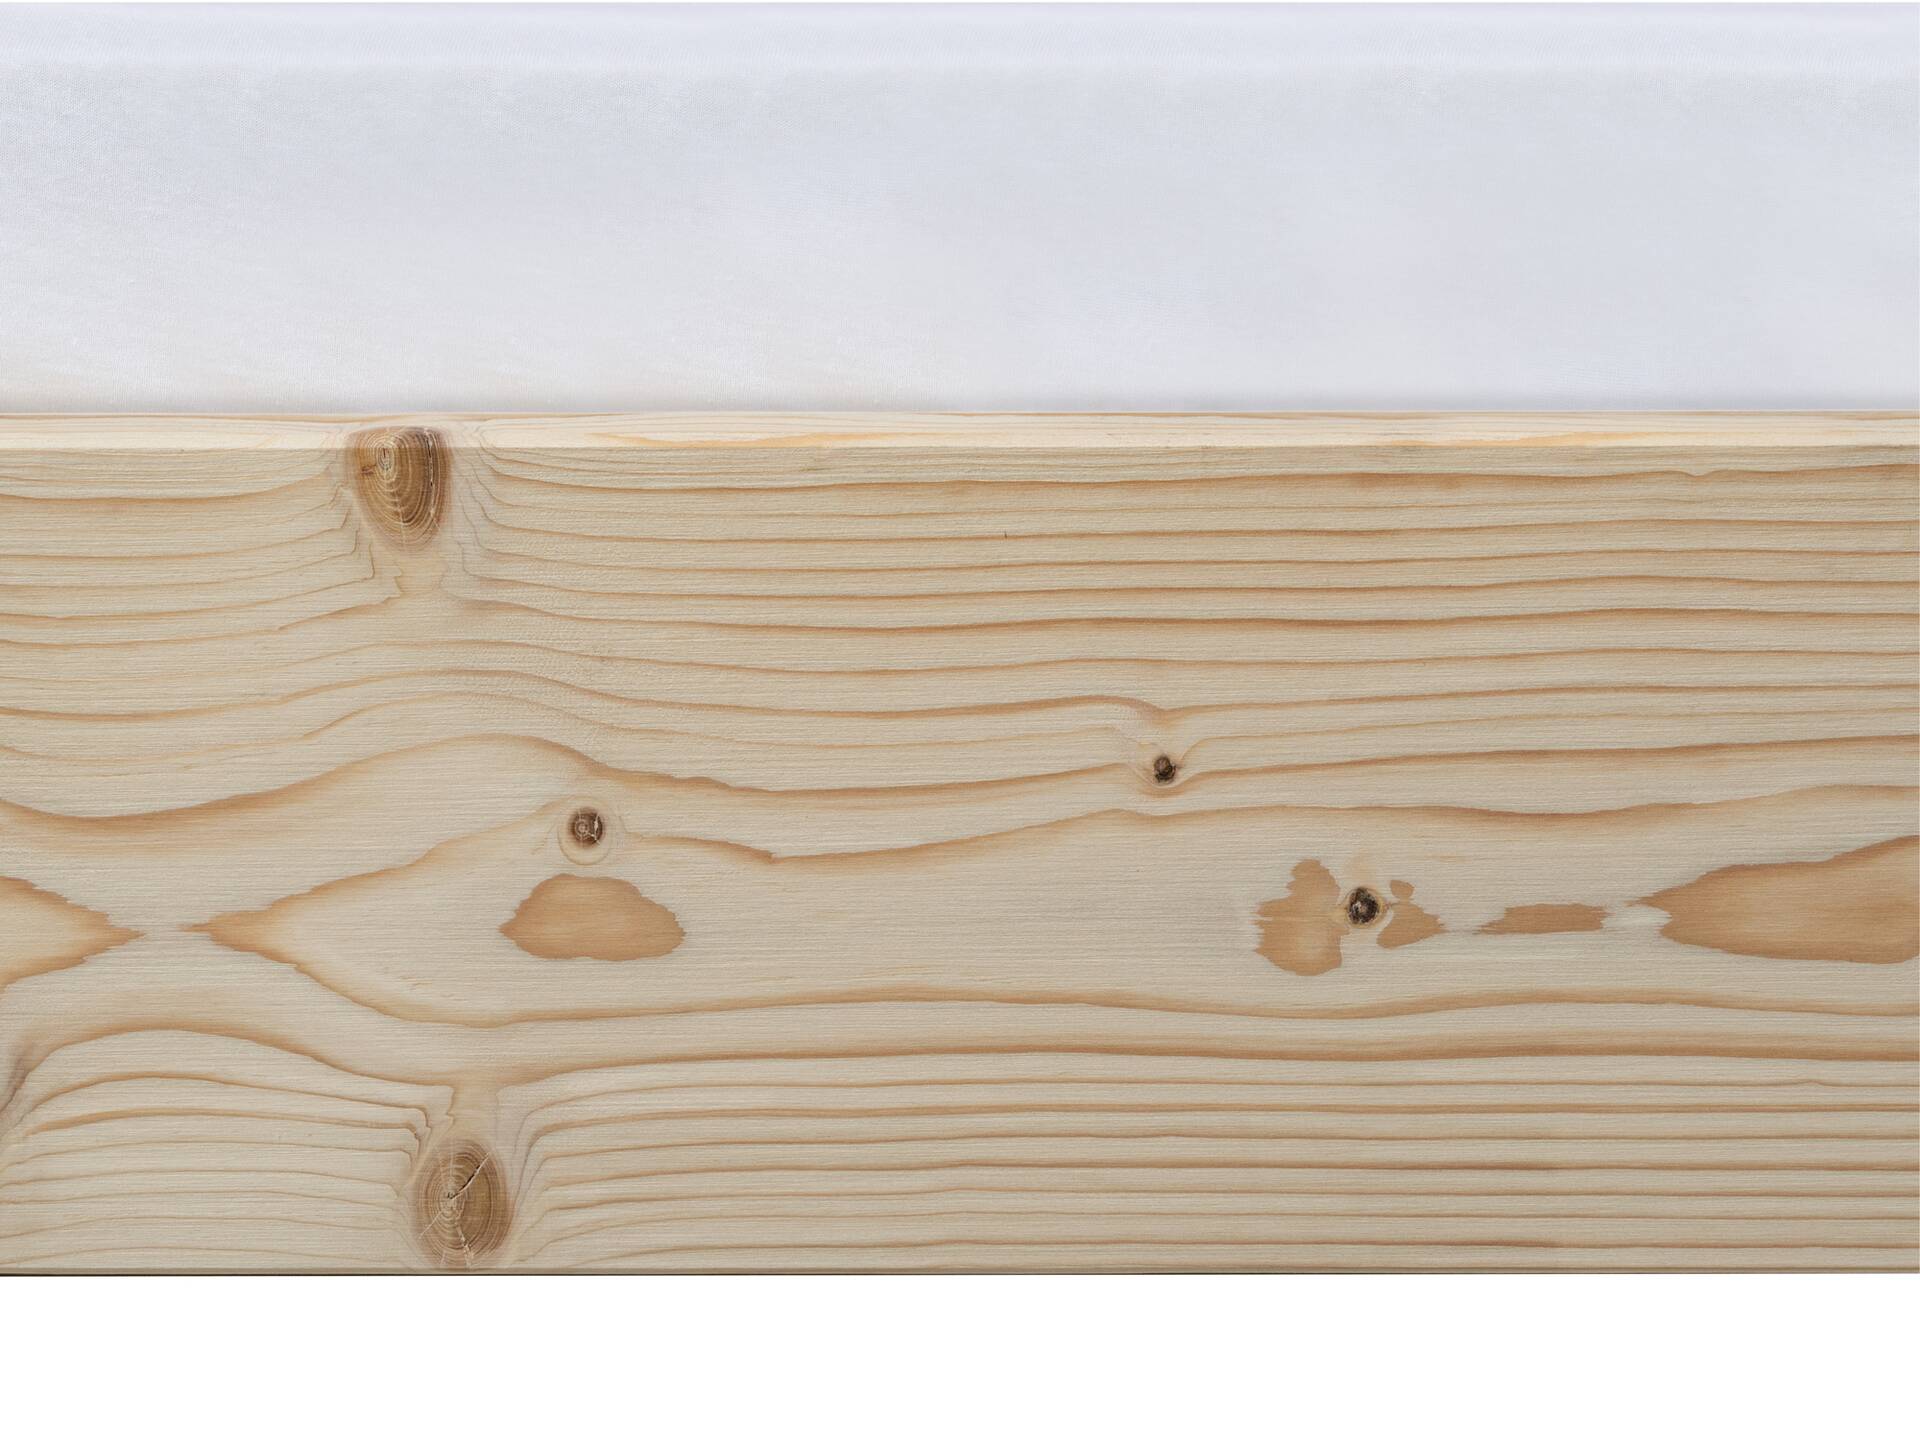 LUKY Kufenbett mit Kopfteil, Material Massivholz, Fichte massiv, Kufen weiß 140 x 200 cm | natur